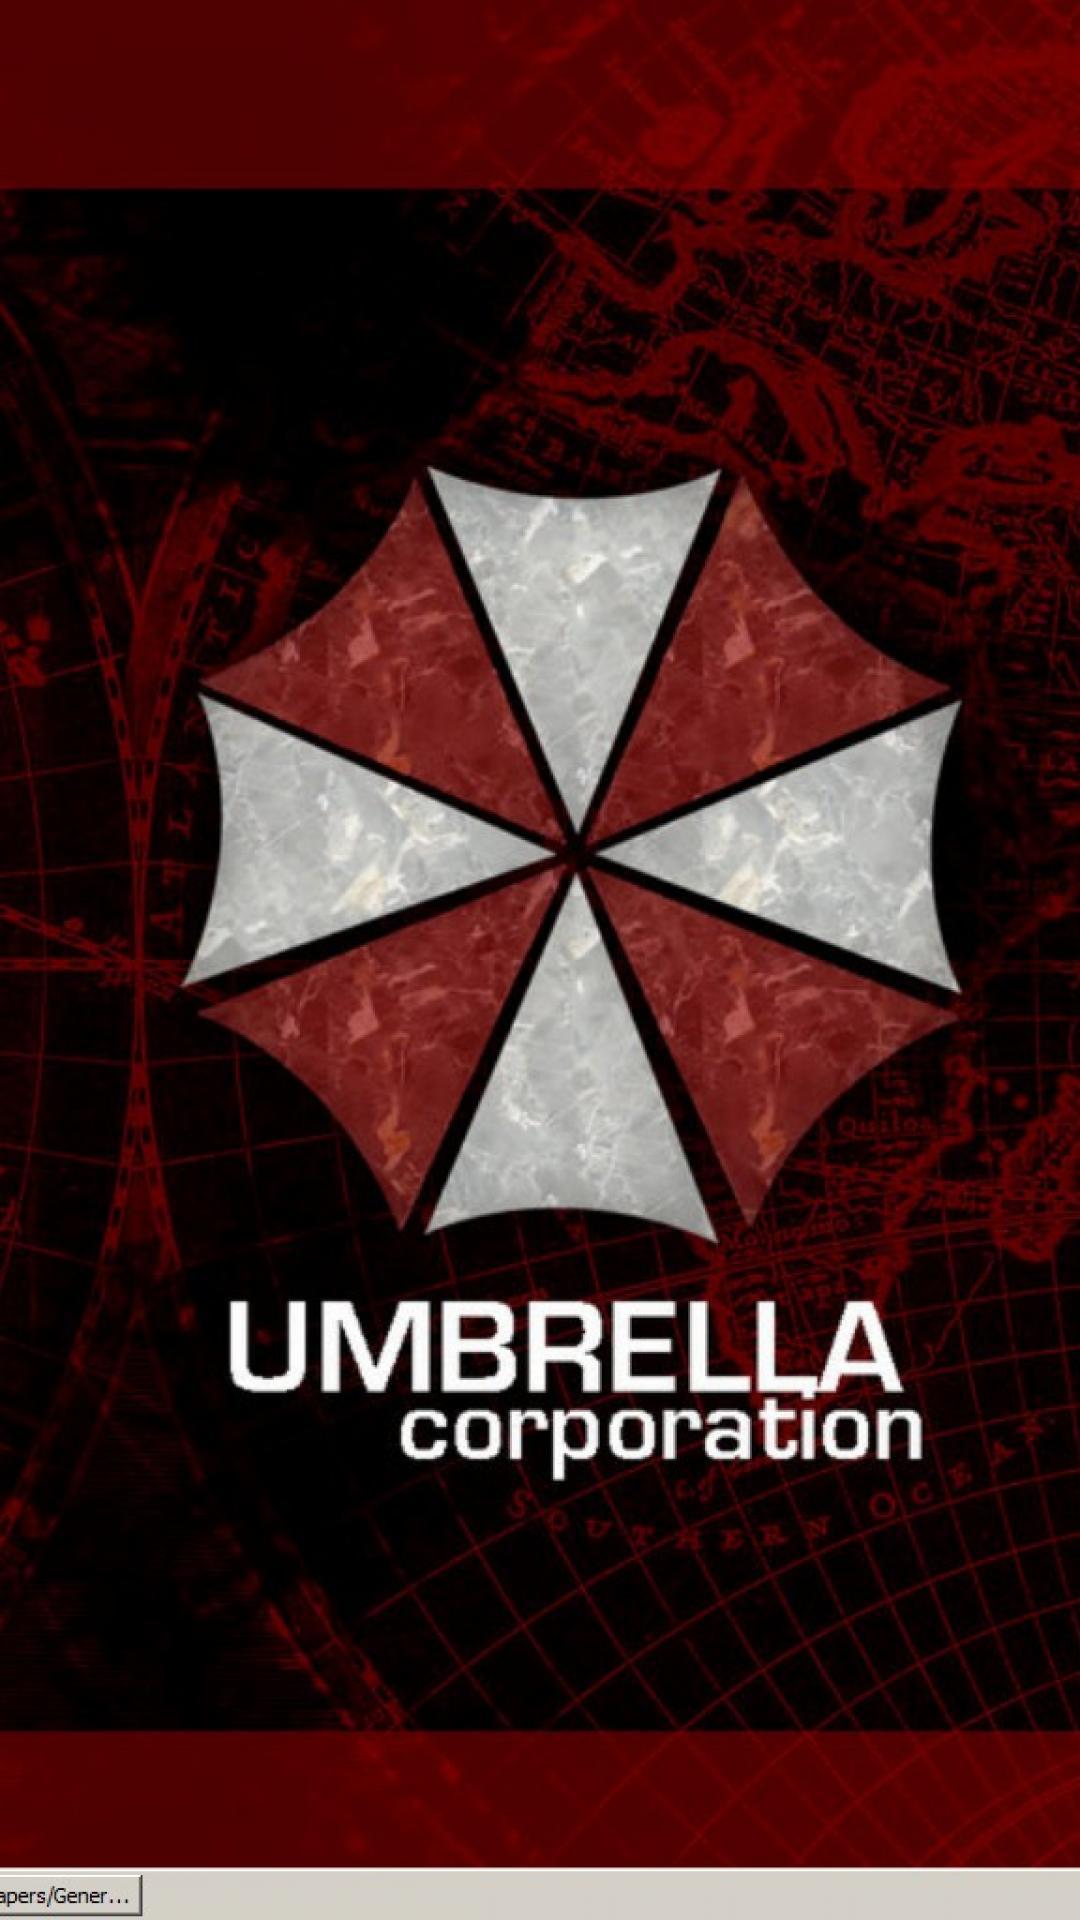 Umbrella Corporation Phone Wallpapers - Wallpaper Cave